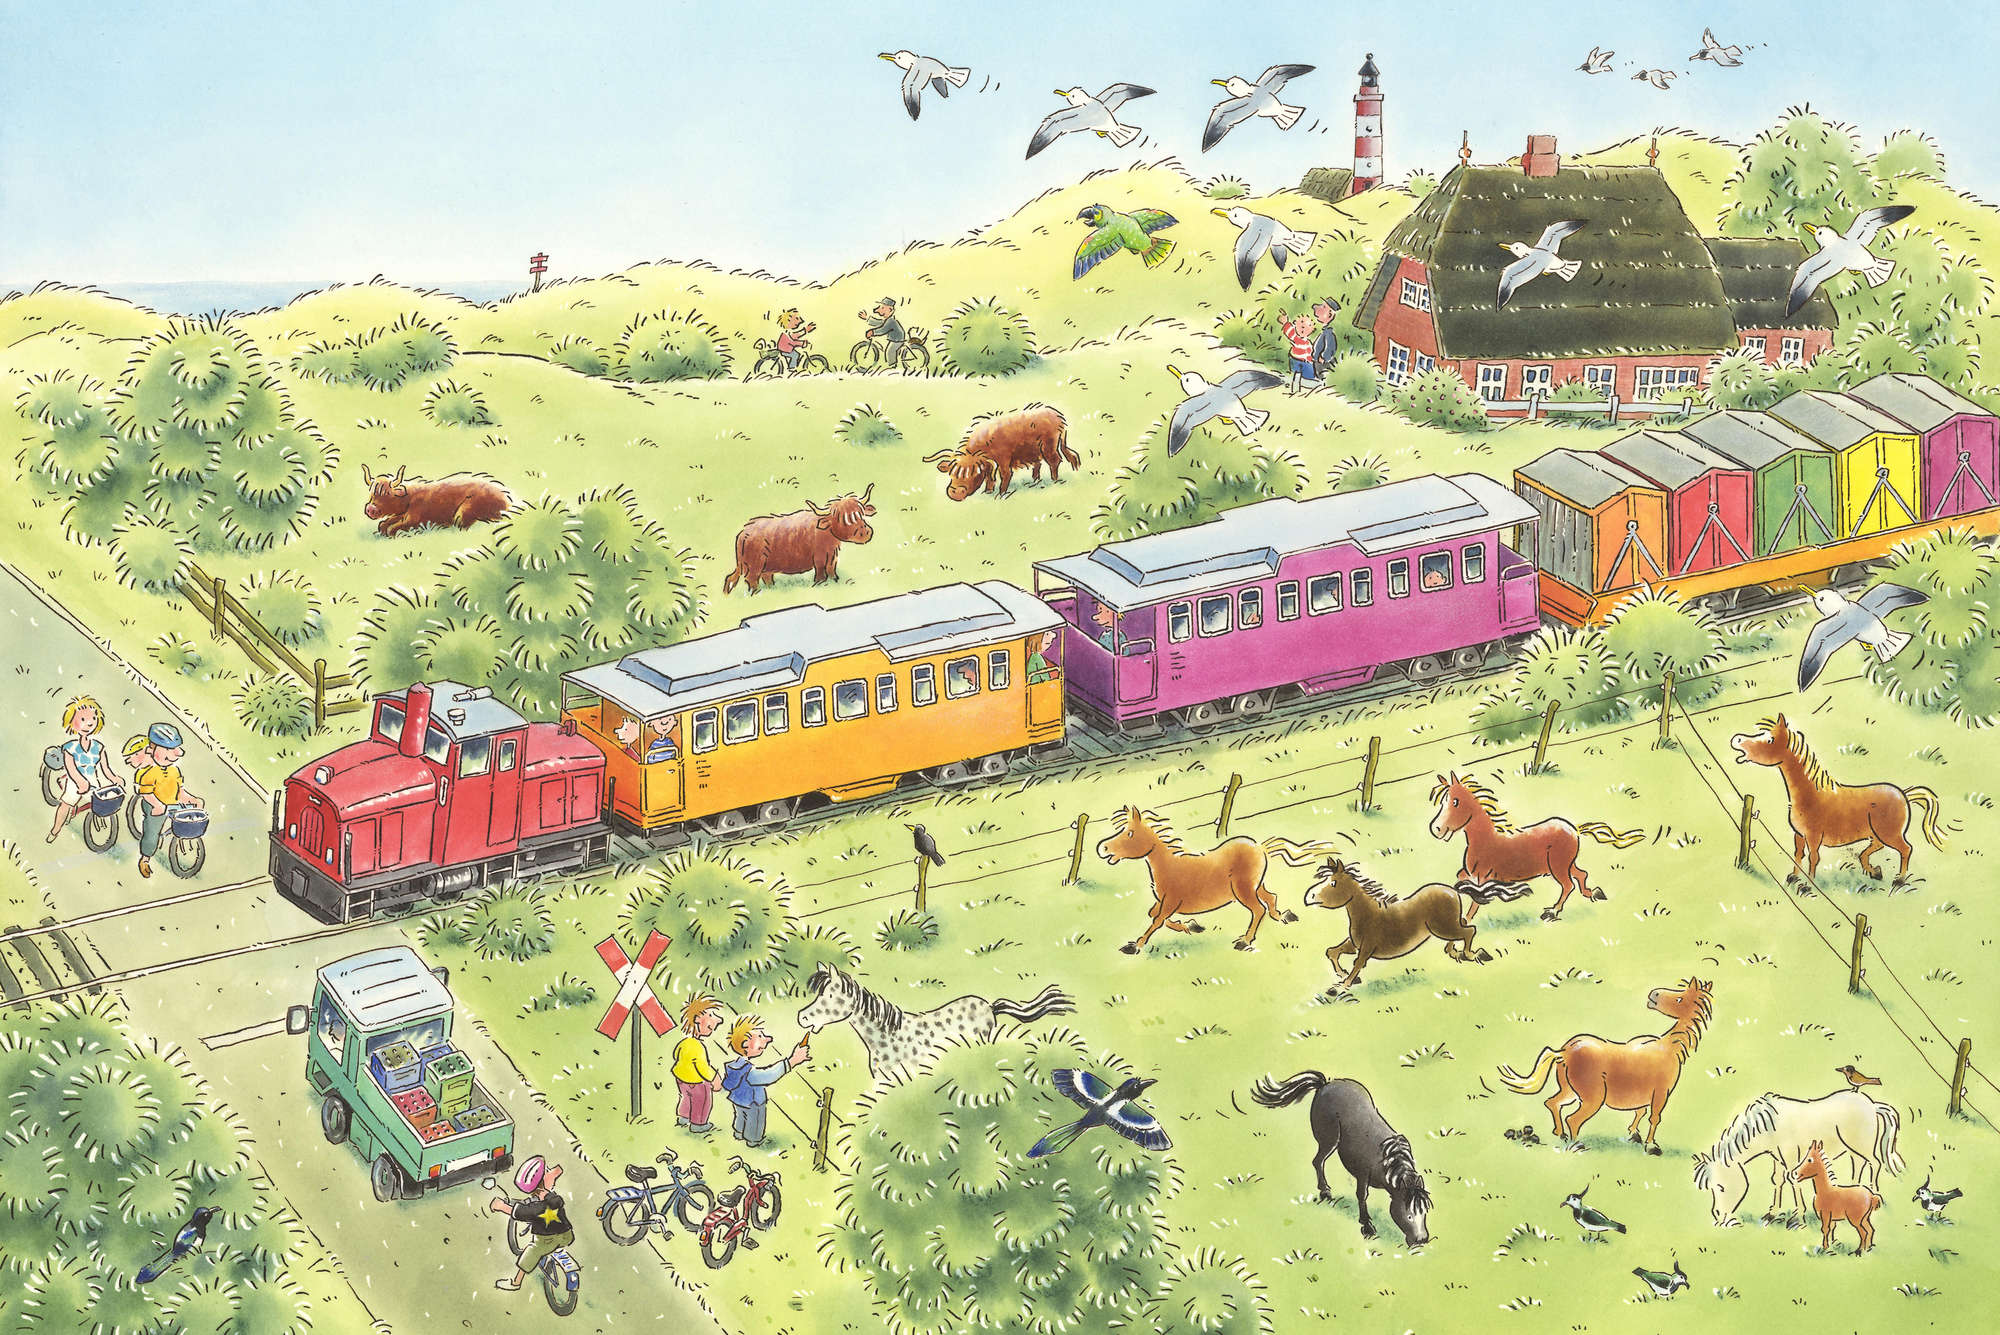             Papel pintado infantil Paso a nivel con tren y animales en nácar liso
        